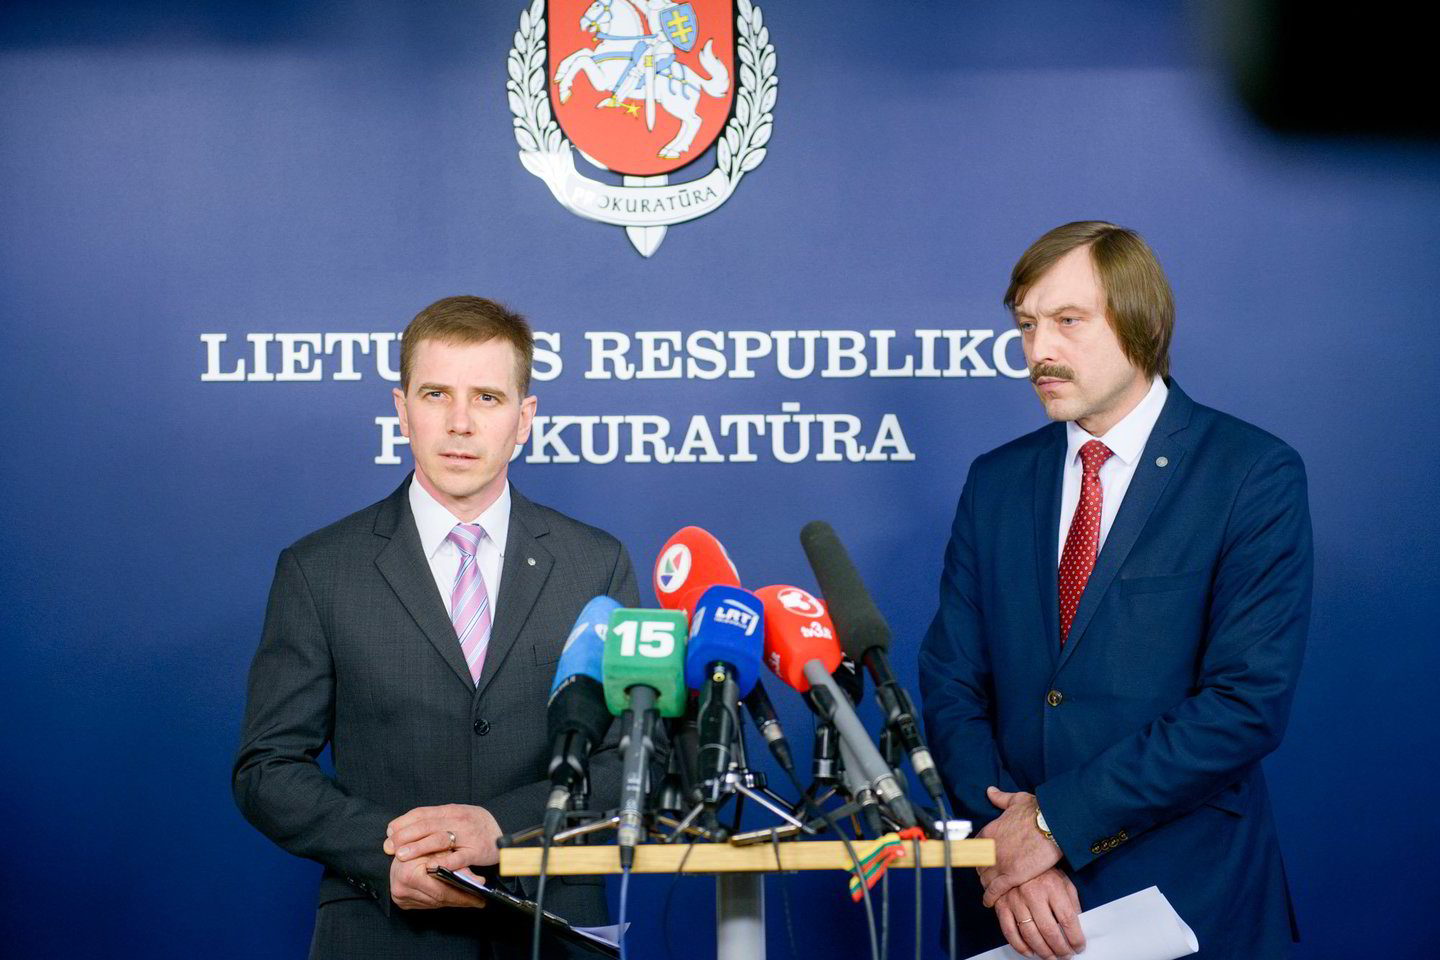  Situaciją komentavo R.Lukošius ir N.Puškorius.<br> J.Stacevičiaus nuotr. 